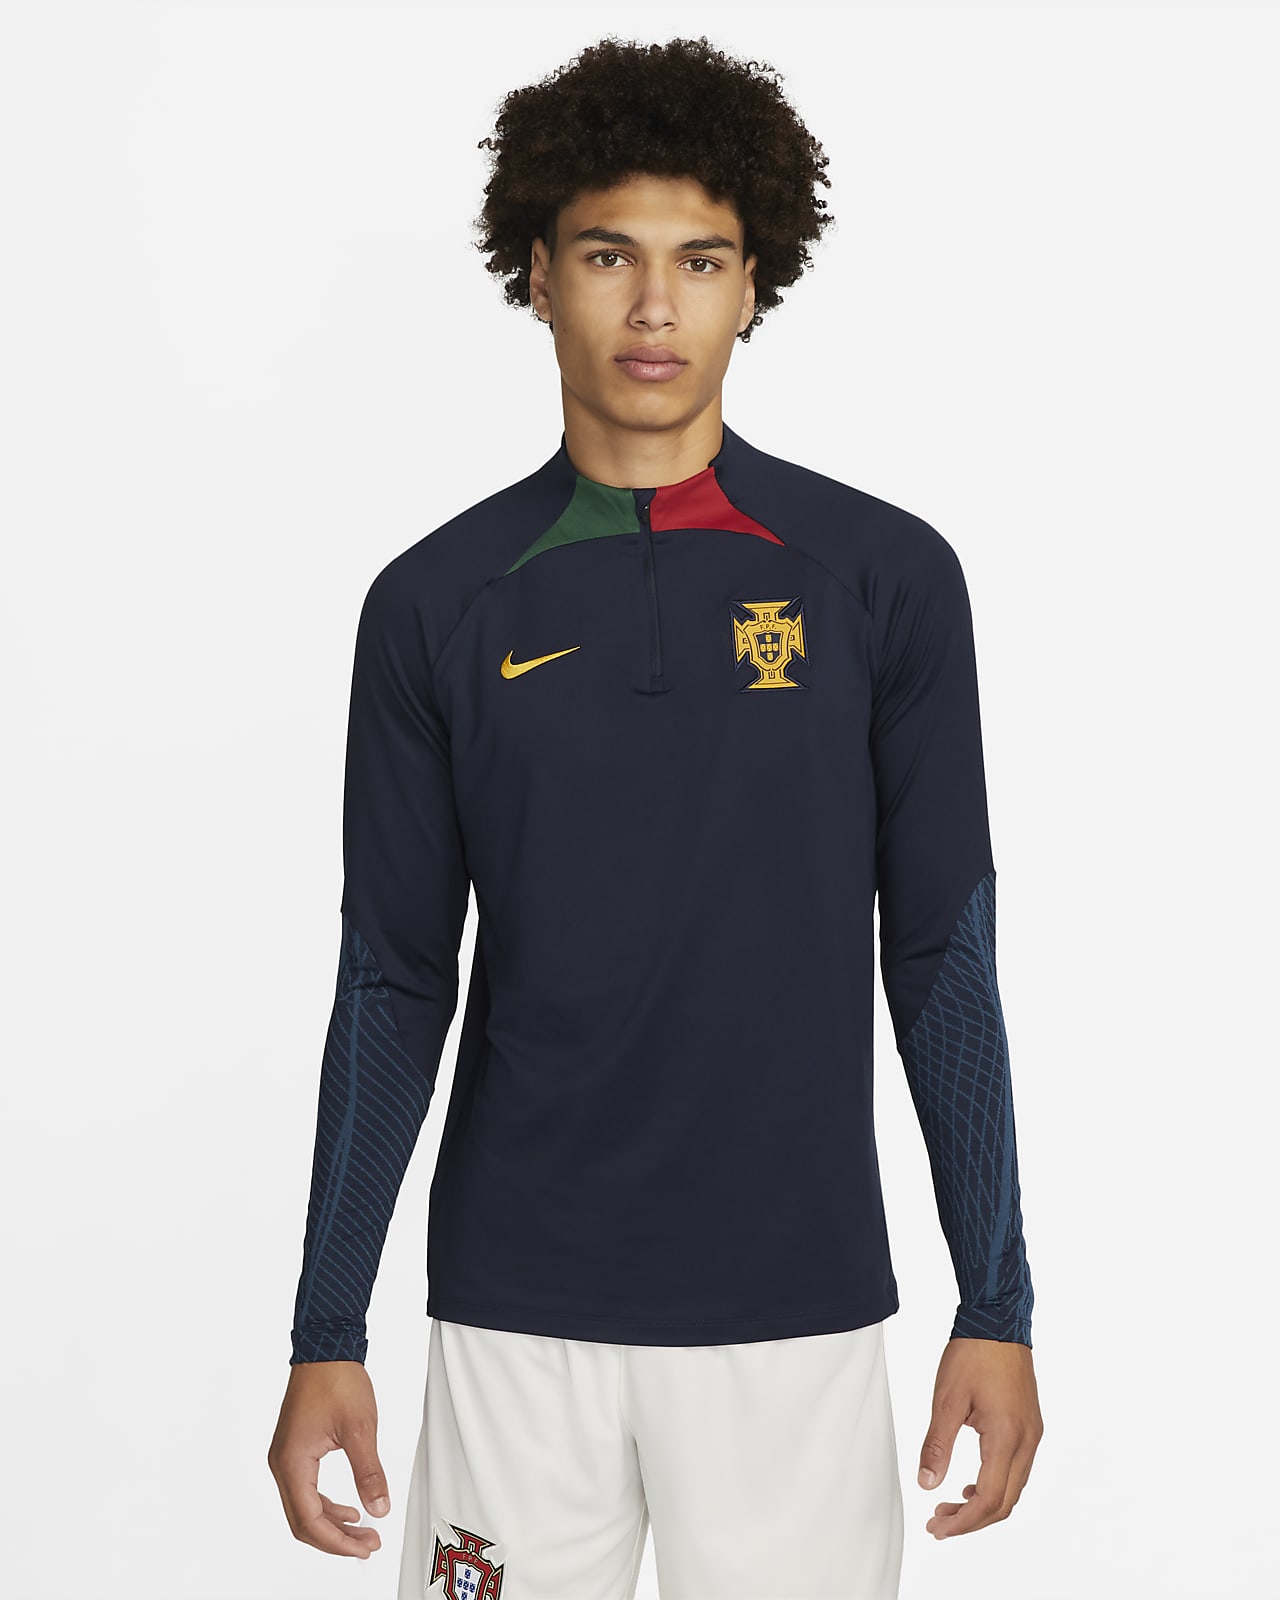 Ανδρική πλεκτή ποδοσφαιρική μπλούζα προπόνησης Nike Dri-FIT Πορτογαλία Strike